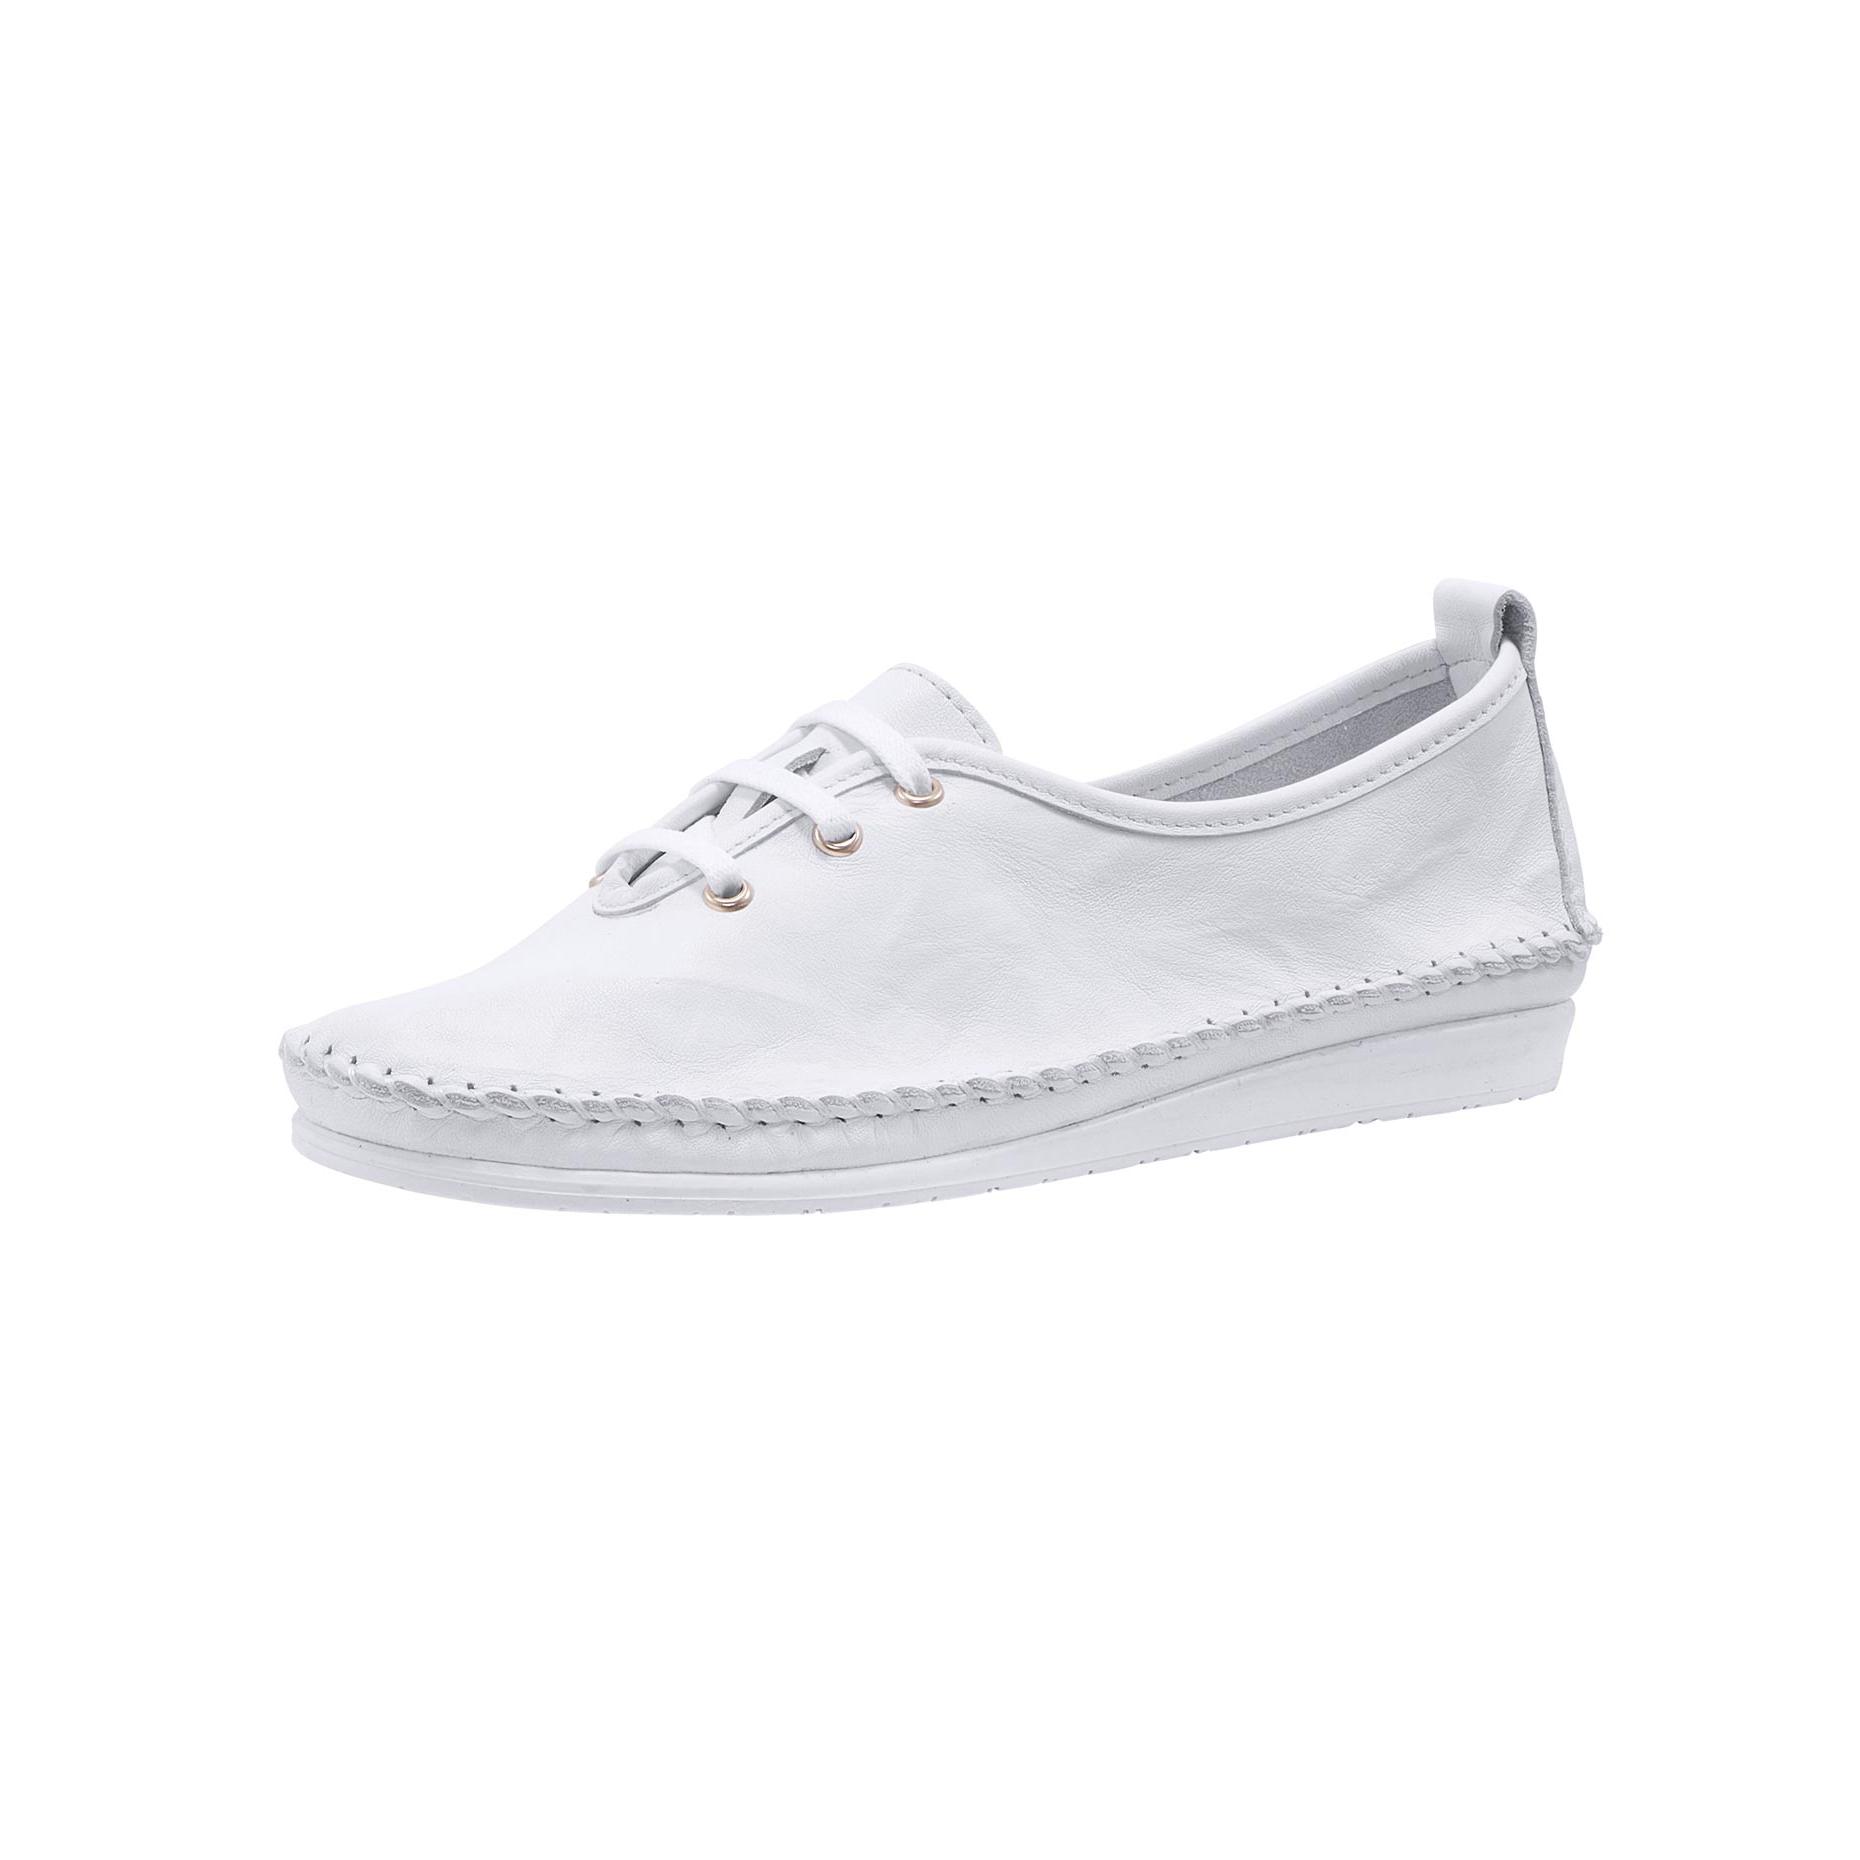 Helline - Chaussures à lacets blanc - Grandes pointures - Sélection  grandshopping.fr